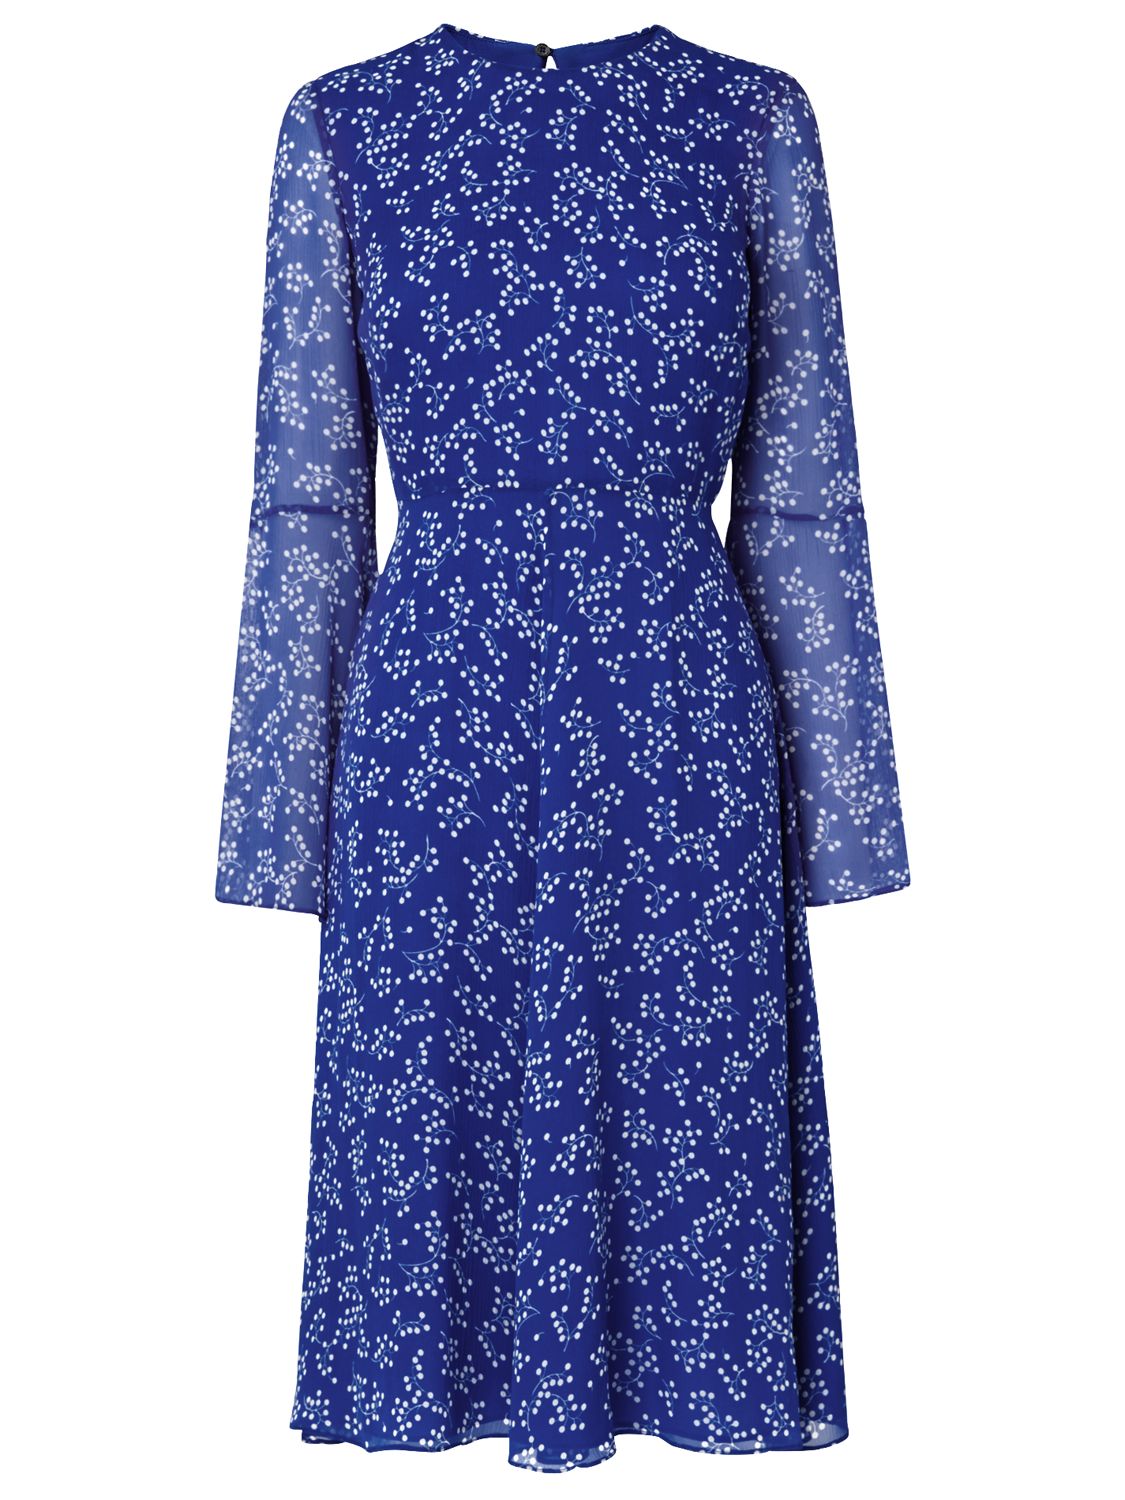 L.K. Bennett Cecily Silk Dress, Blue, 6